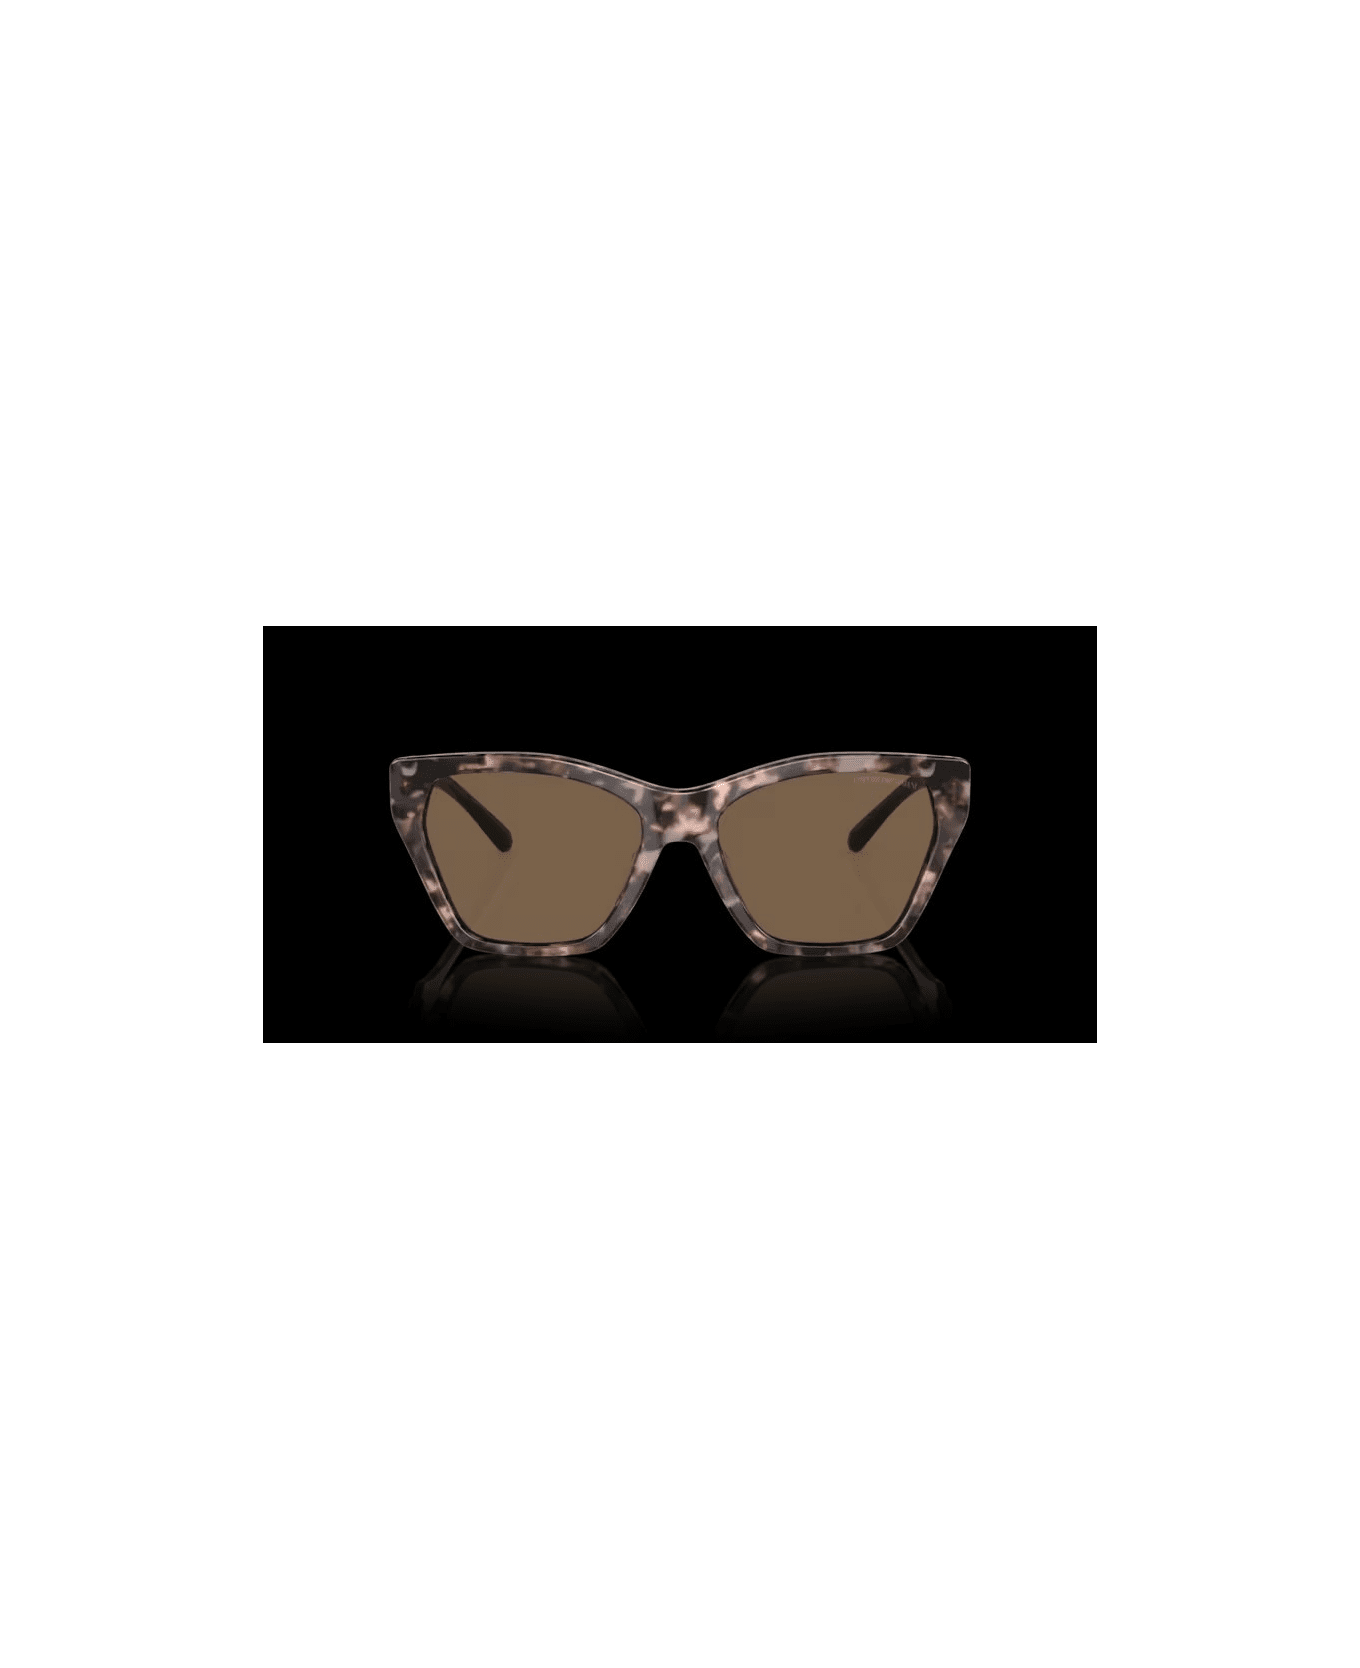 Emporio Armani EA 4203S 5410/73 Sunglasses - Tartarugato rosato